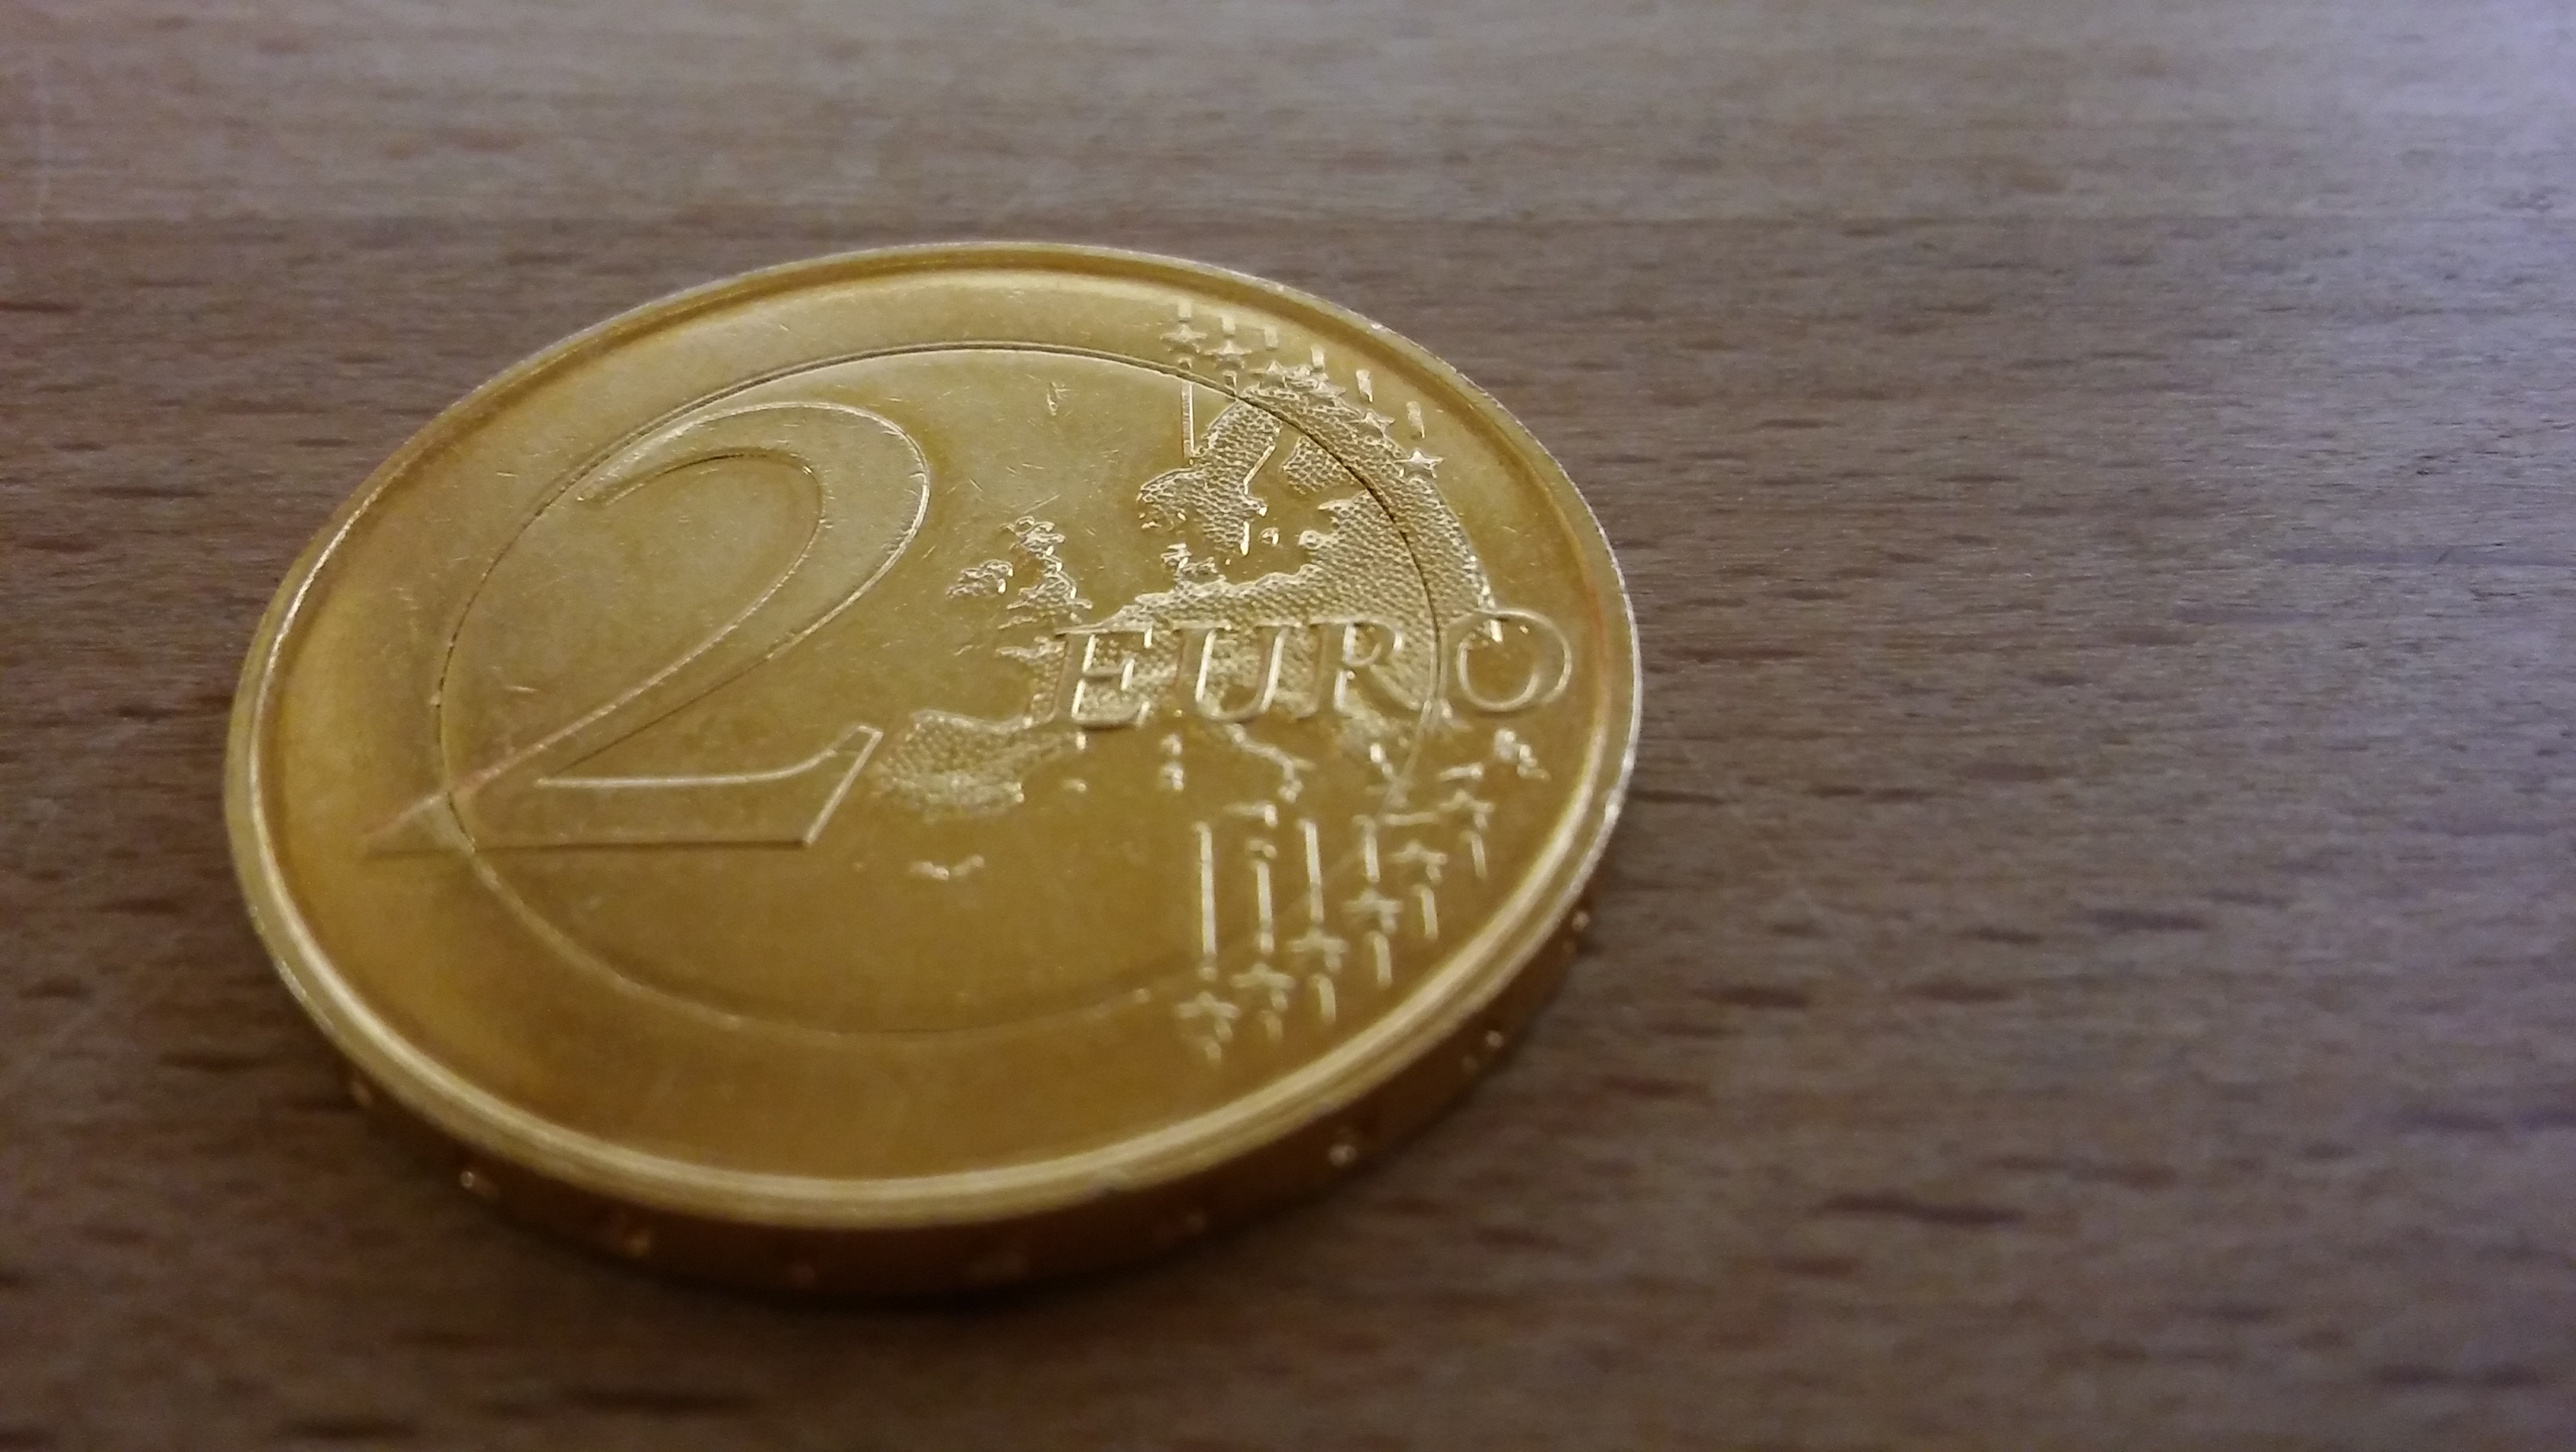 Was ist diese ganz Goldene 2€ Münze Wert? (Münzen, Sammler, 2 Euro Münze)